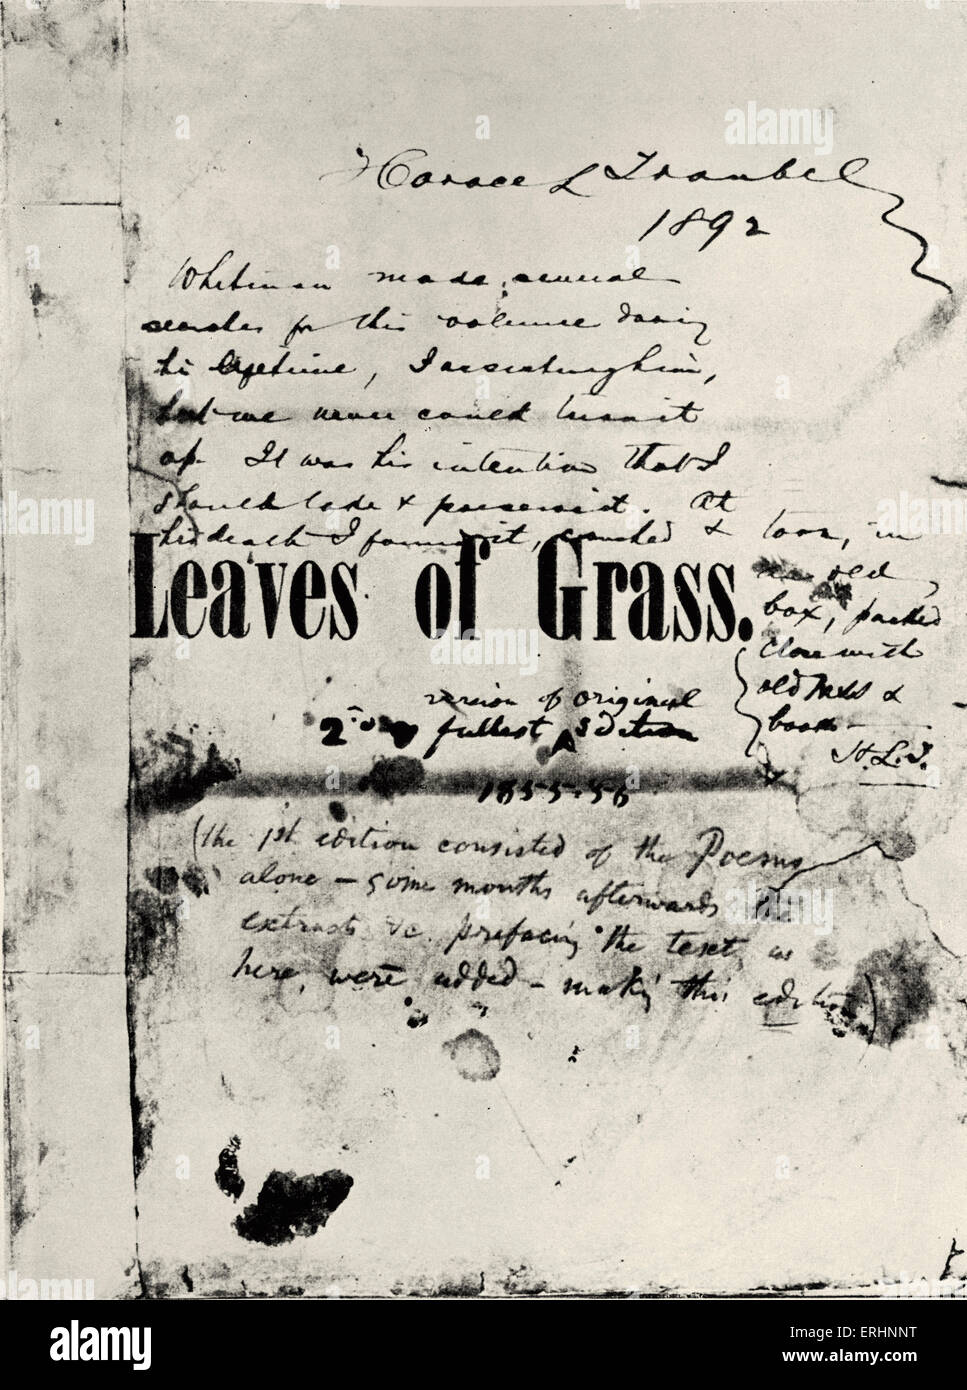 Feuilles d'herbe - Walt Whitman est exemplaire de la première édition de son livre 'Feuilles d'herbe", avec des notes manuscrites par Horace L. Banque D'Images